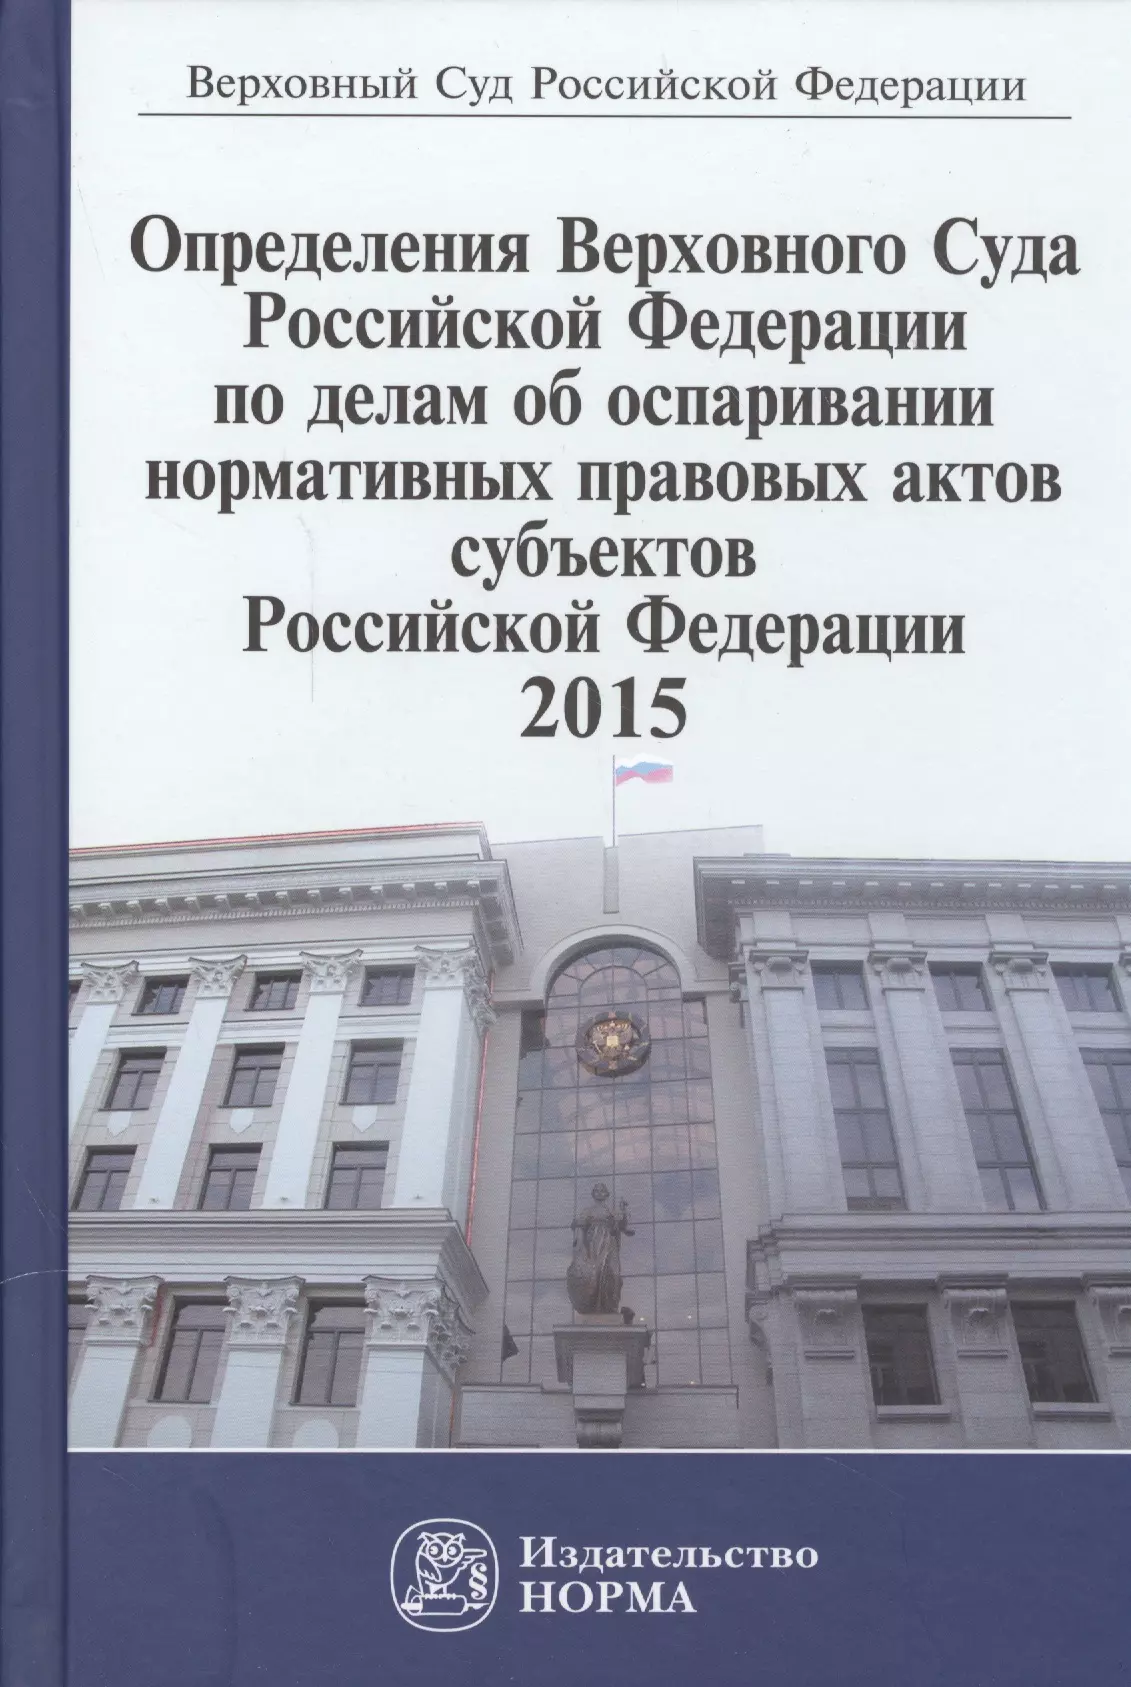  - Определения Верховного Суда Российской Федерации по делам об оспаривании нормативных правовых актов субъектов Российской Федерации 2015